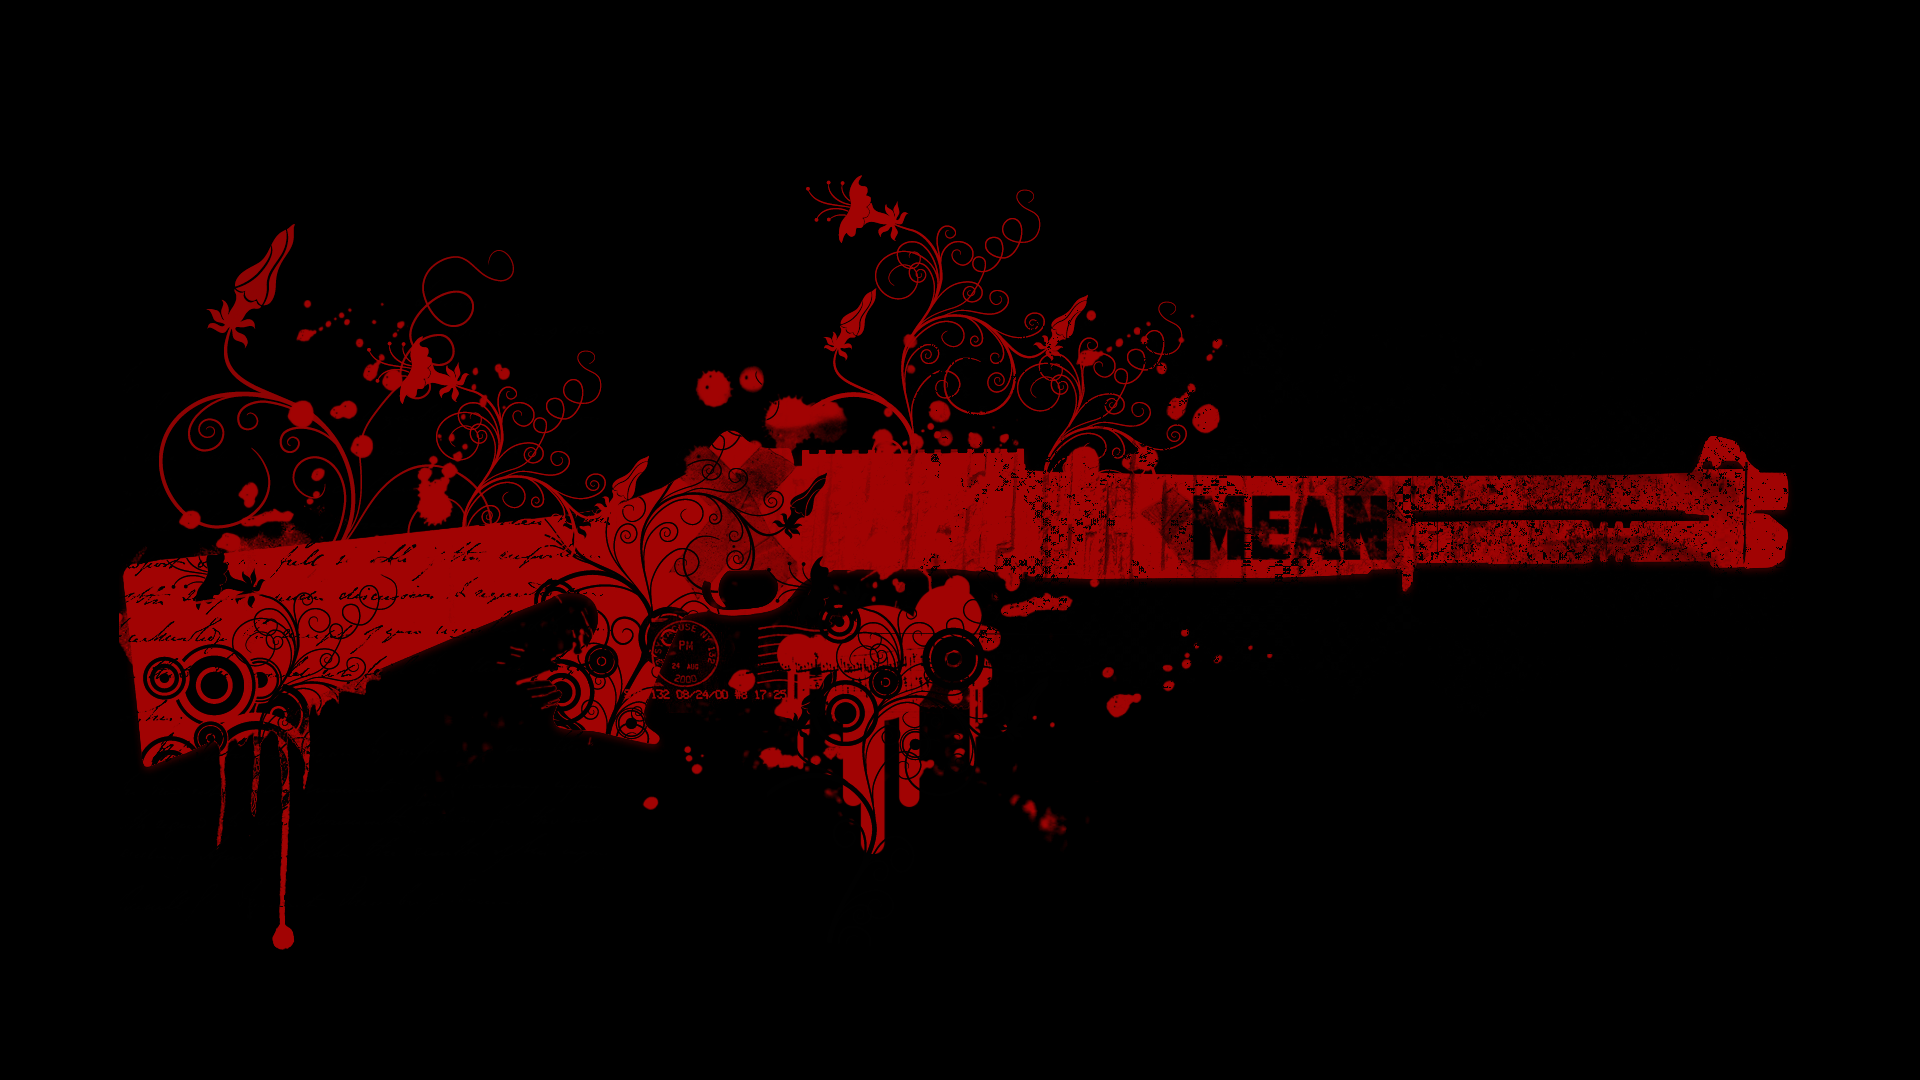 General 1920x1080 gun red text black background digital art shotgun weapon simple background